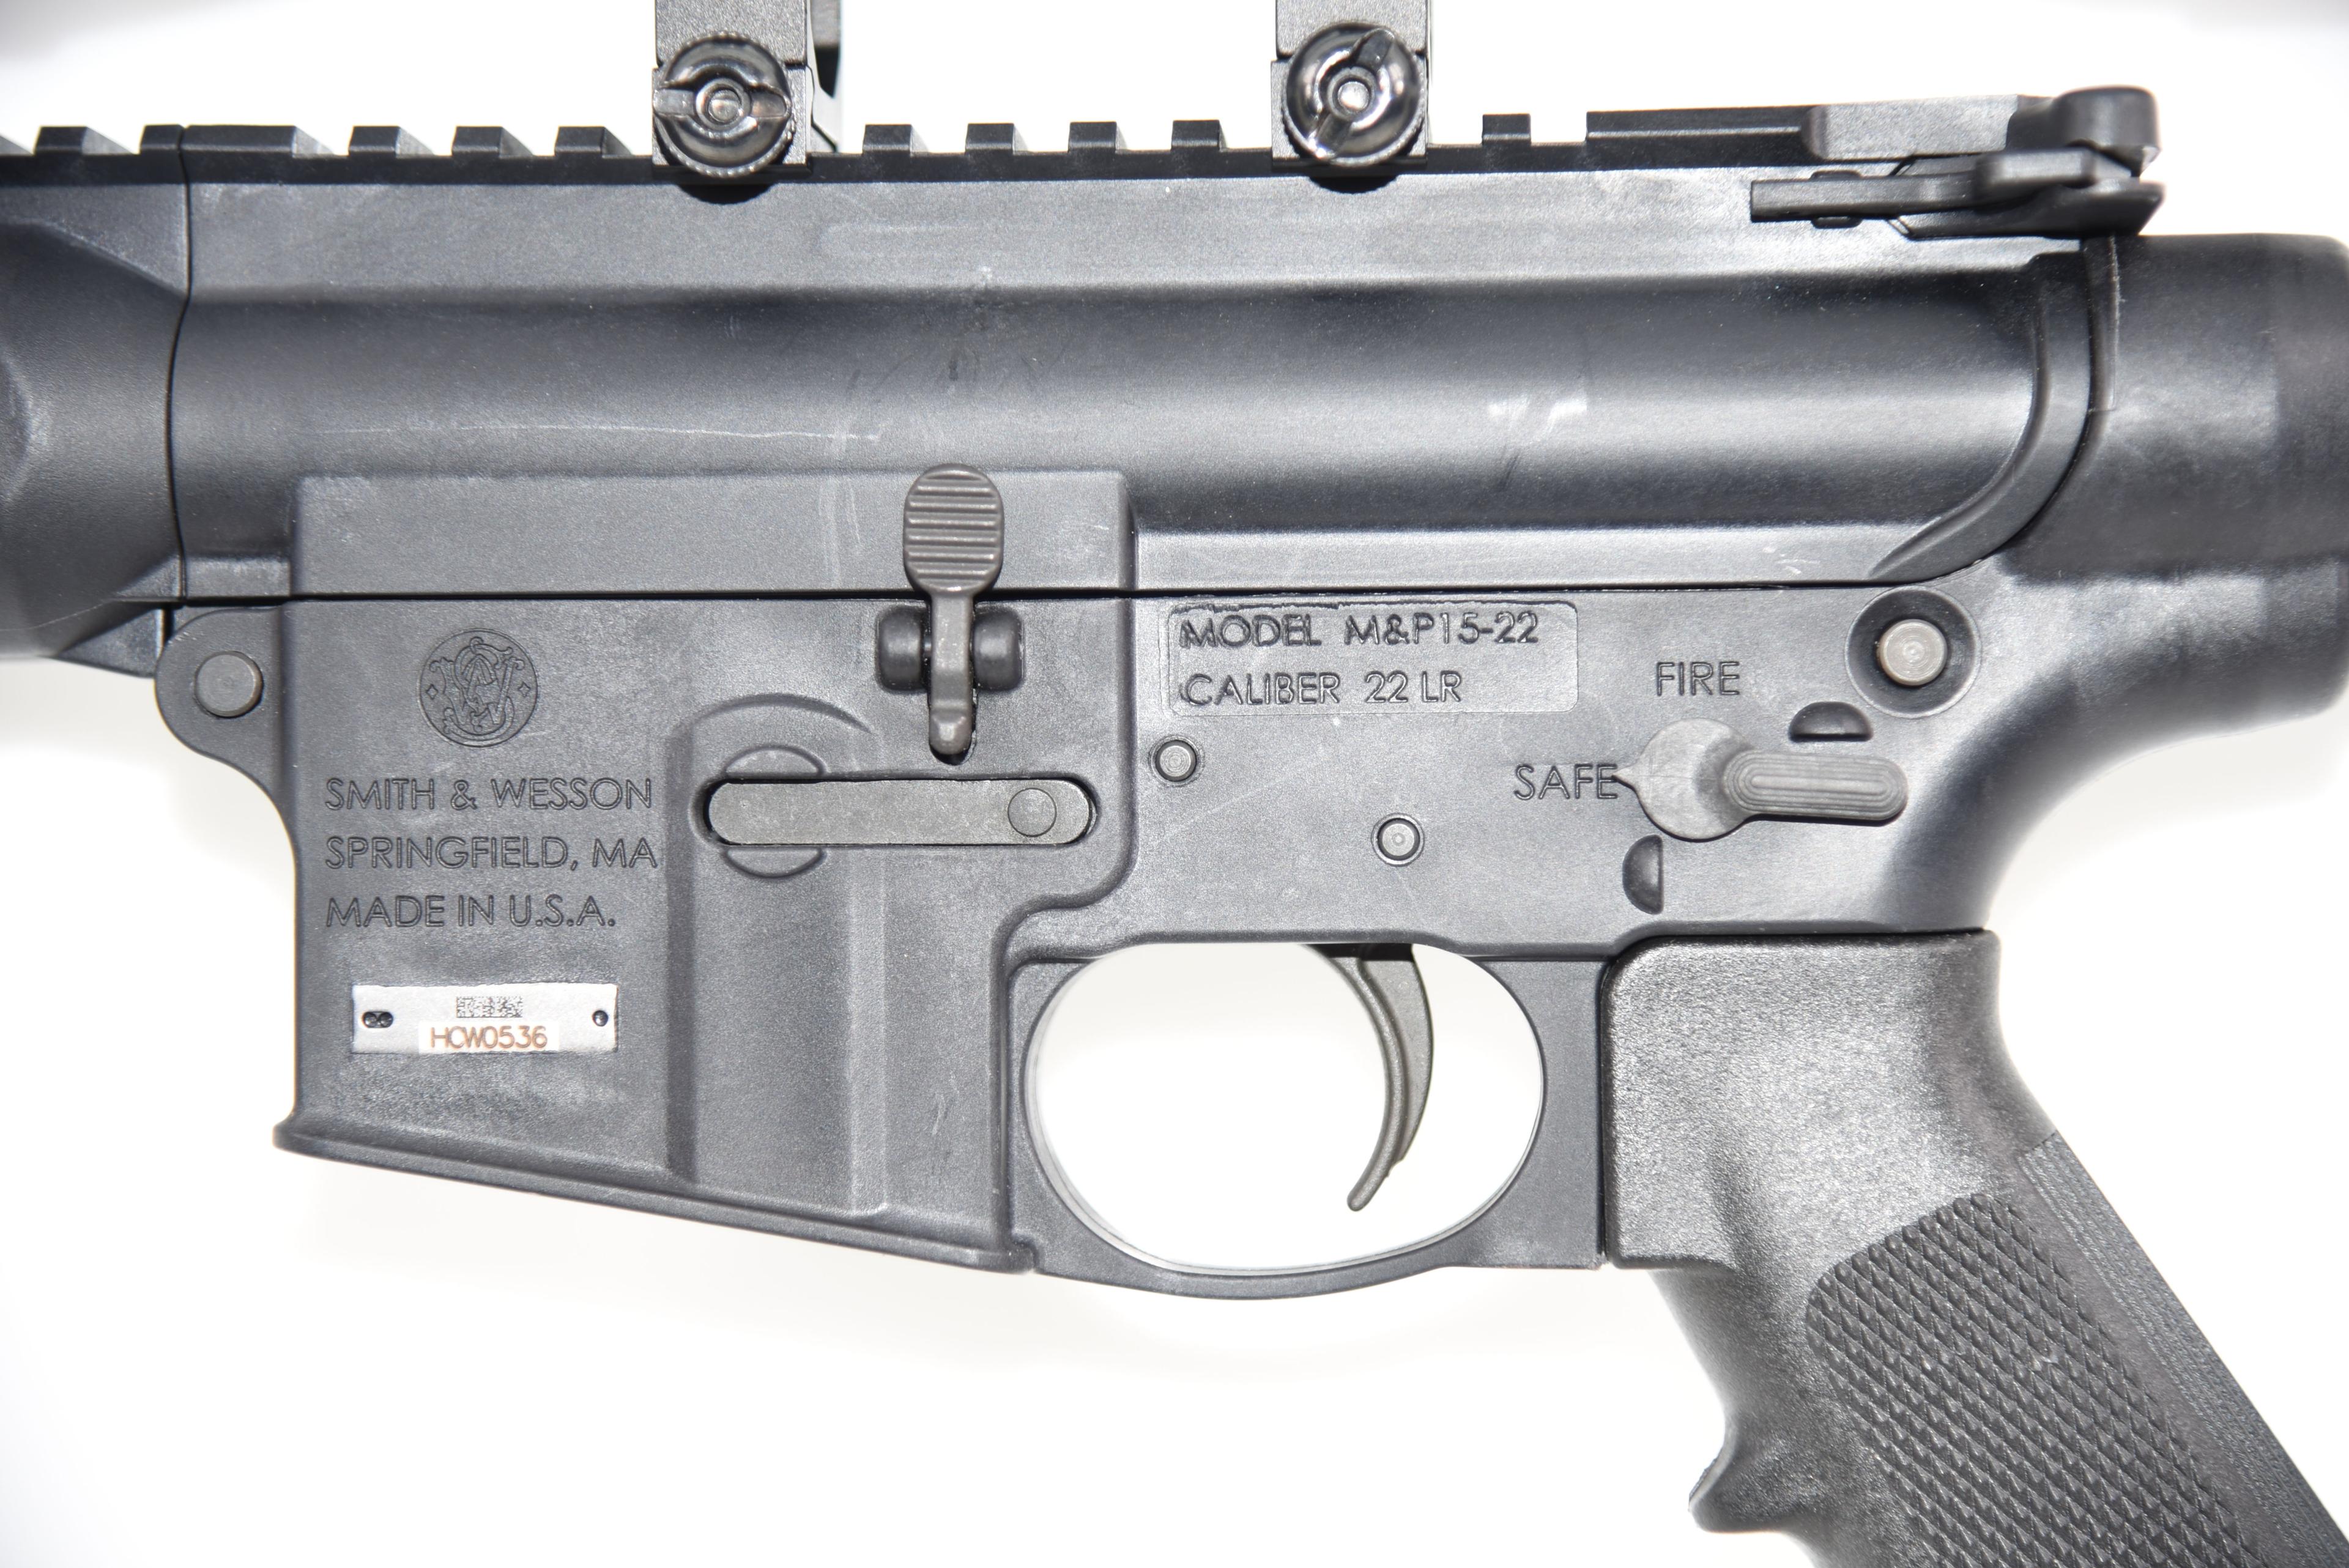 Smith & Wesson M&P 15-22 Semi Auto Rifle